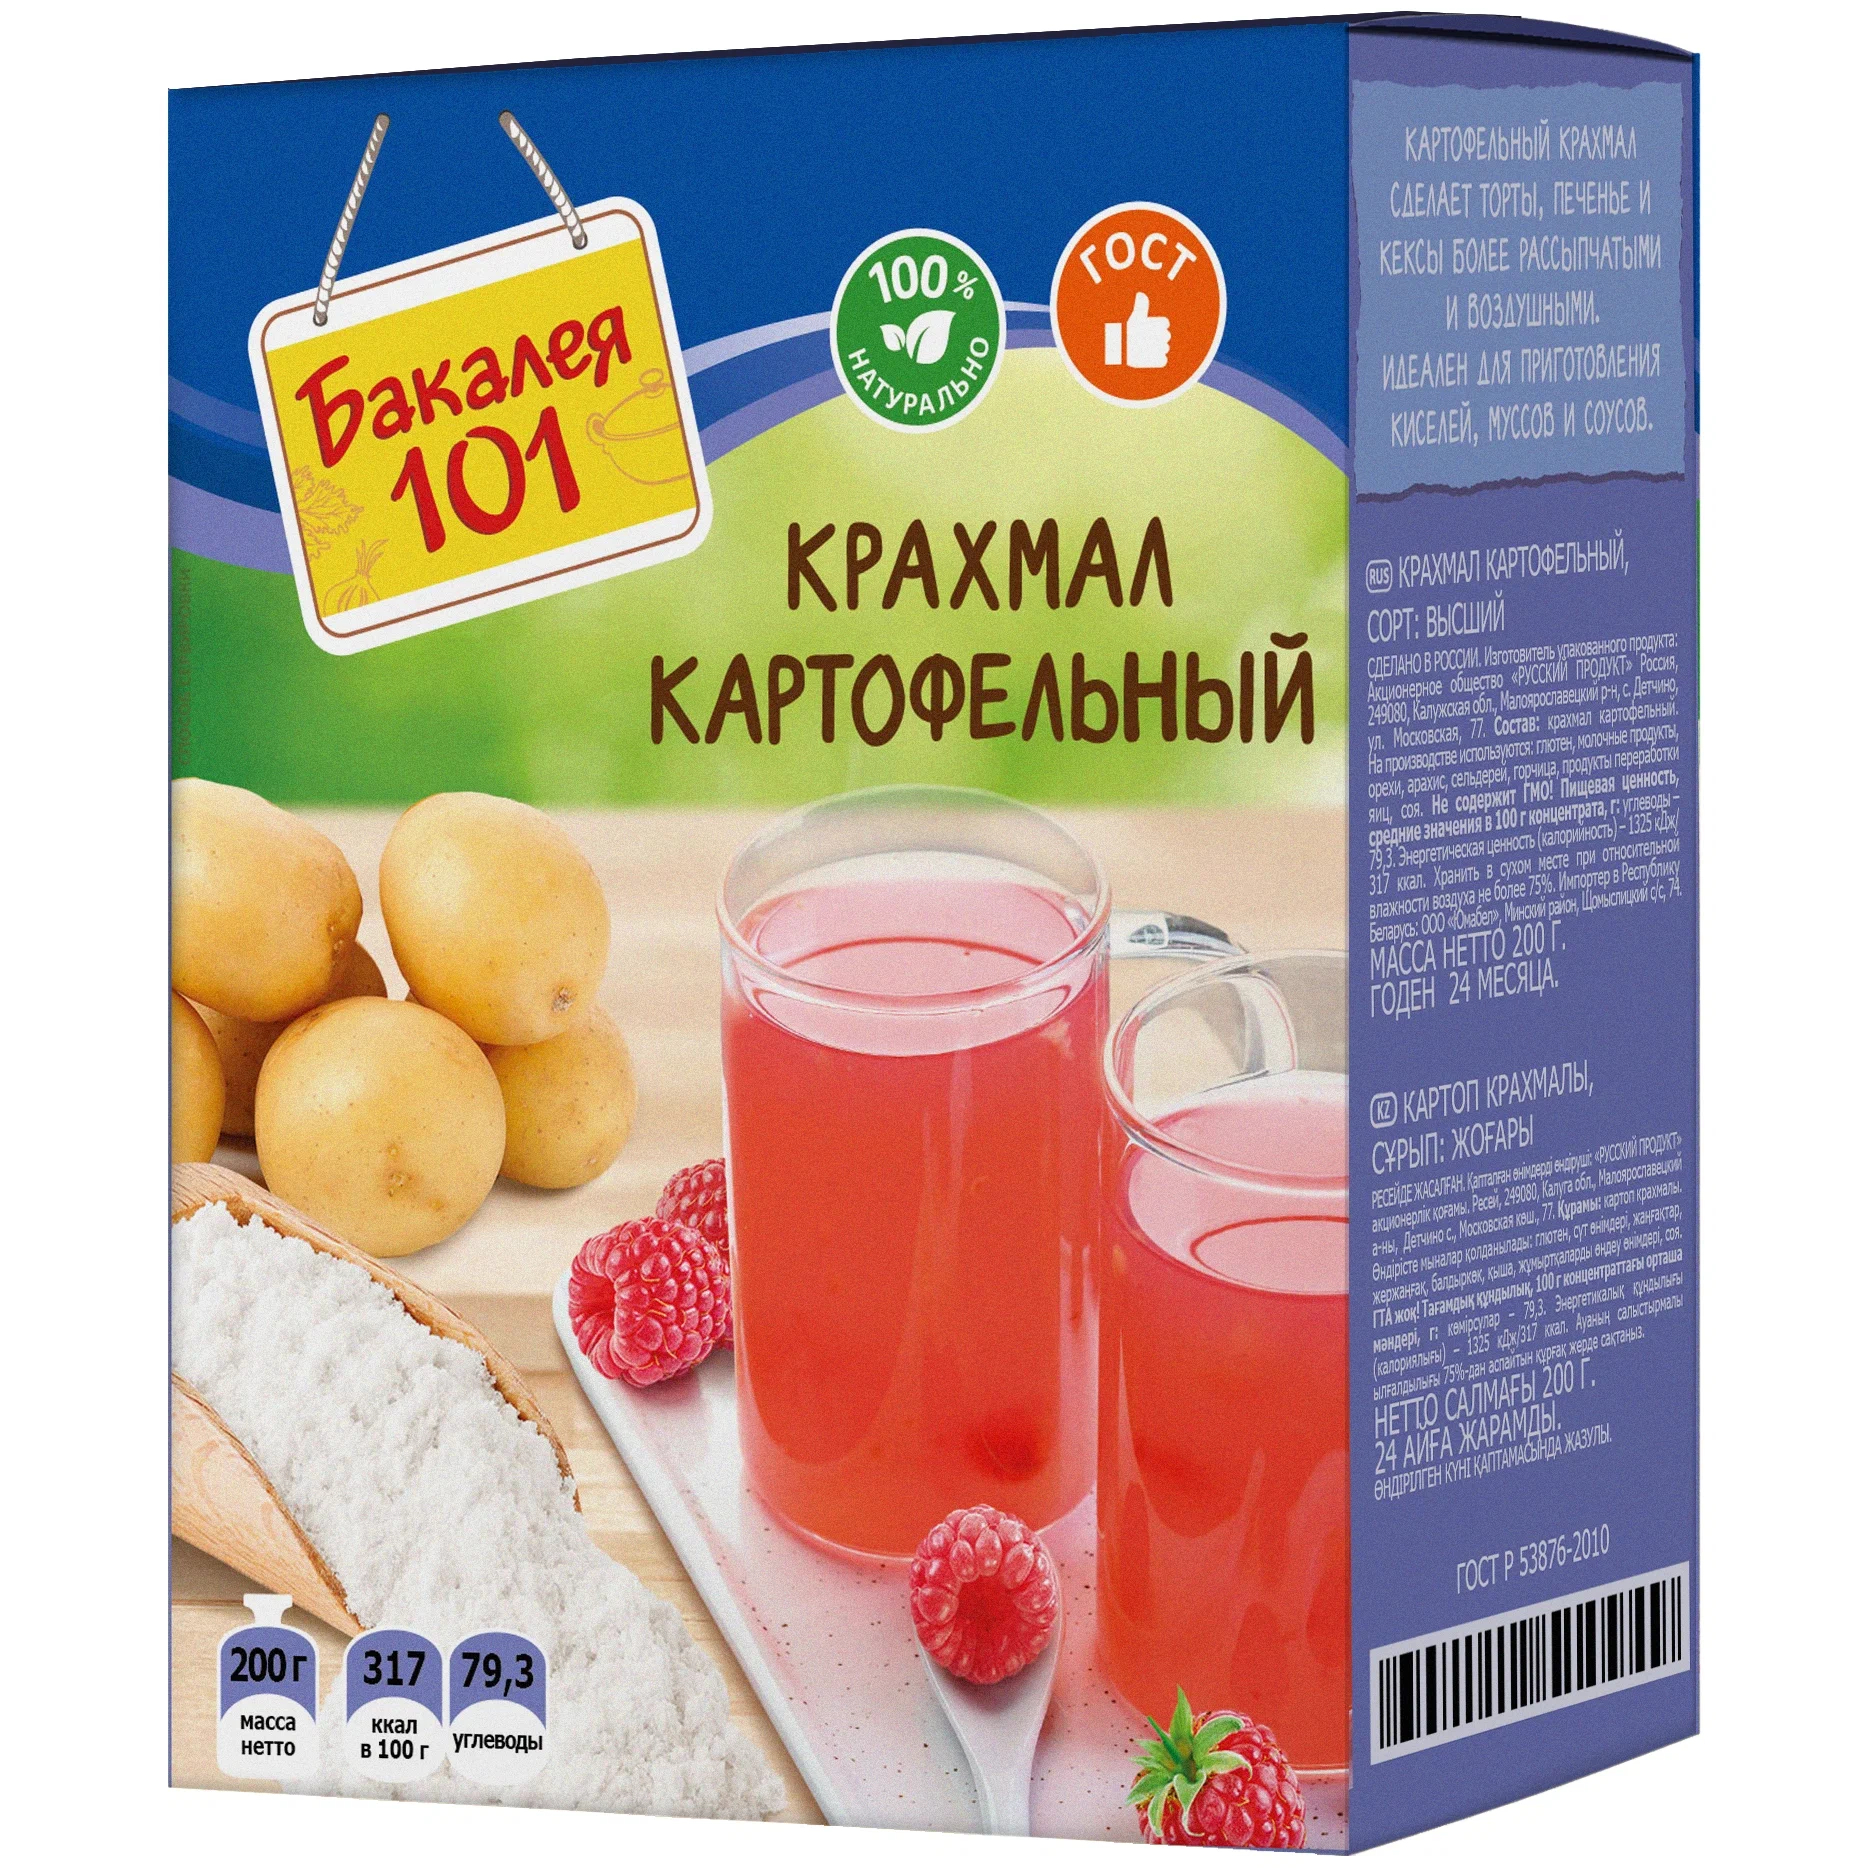 Крахмал картофельный Русский продукт Бакалея 101 200 г